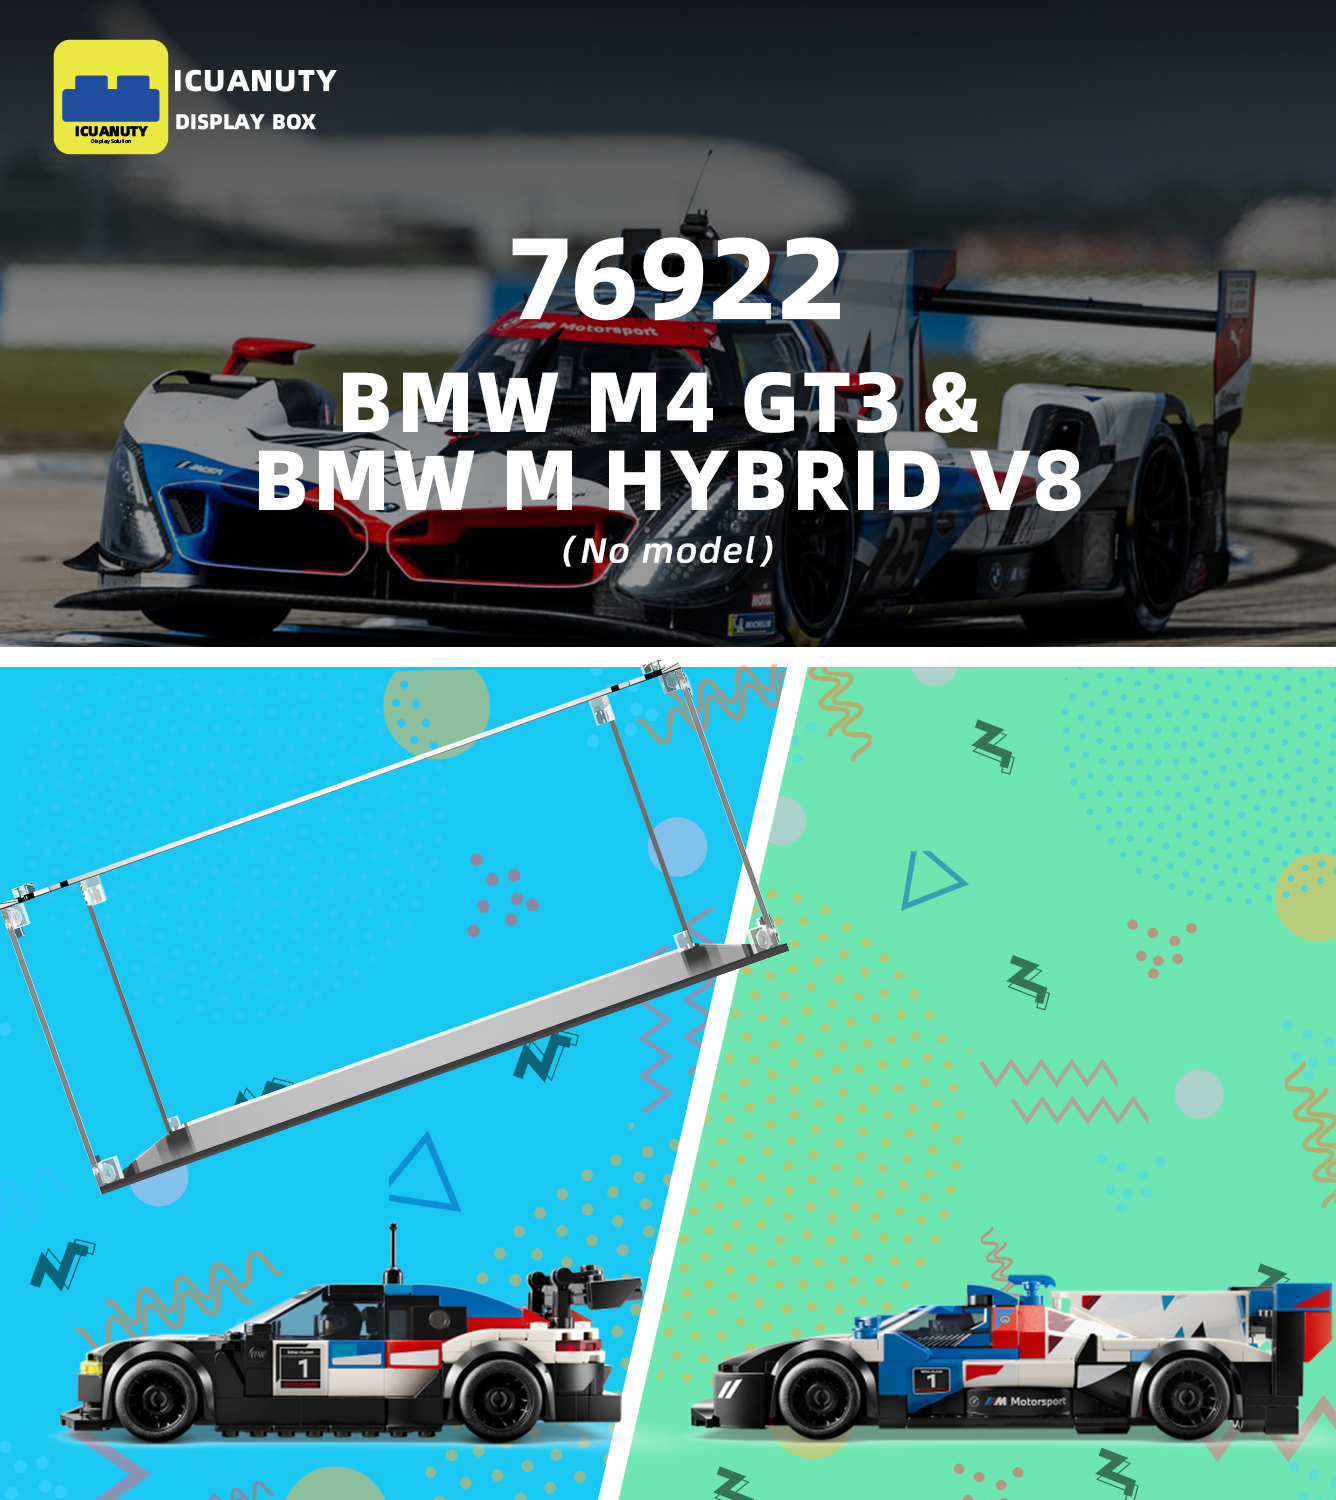 Display case for LEGO BMW M4 GT3 & BMW M Hybrid V8 76922